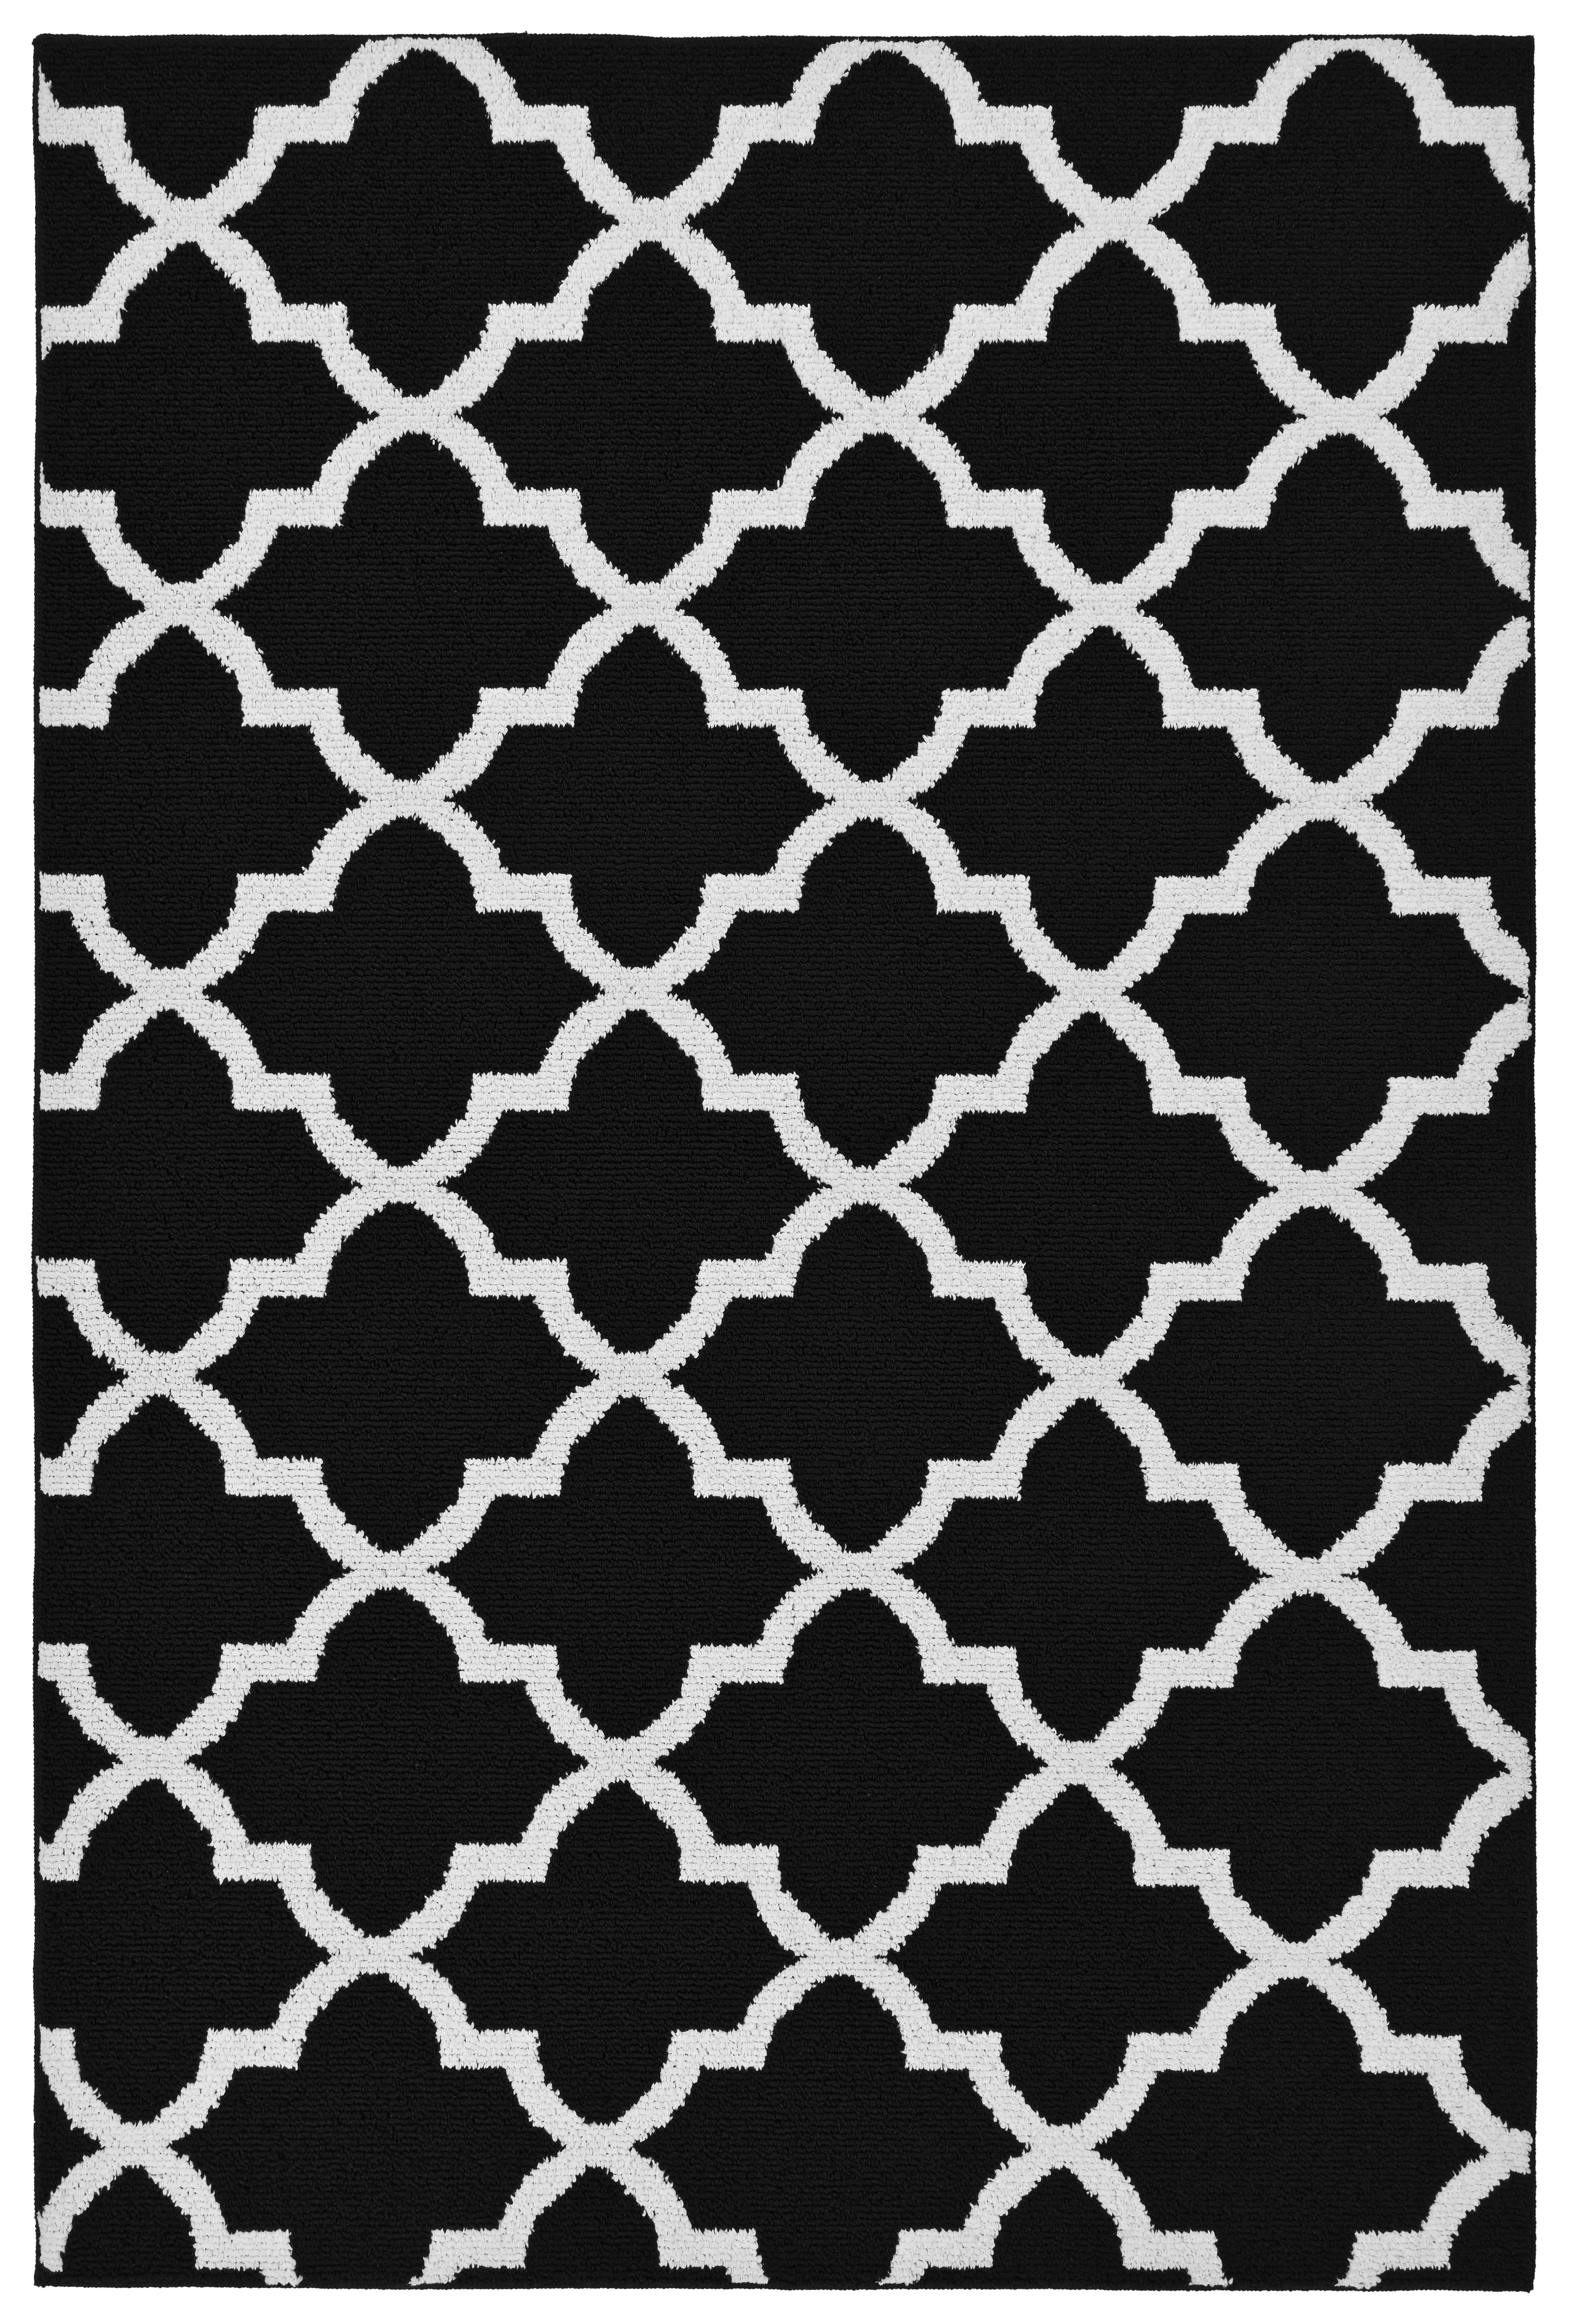 Mainstays Quatrefoil Black/White 5'x7' Geometric Indoor Area Rug - image 1 of 5